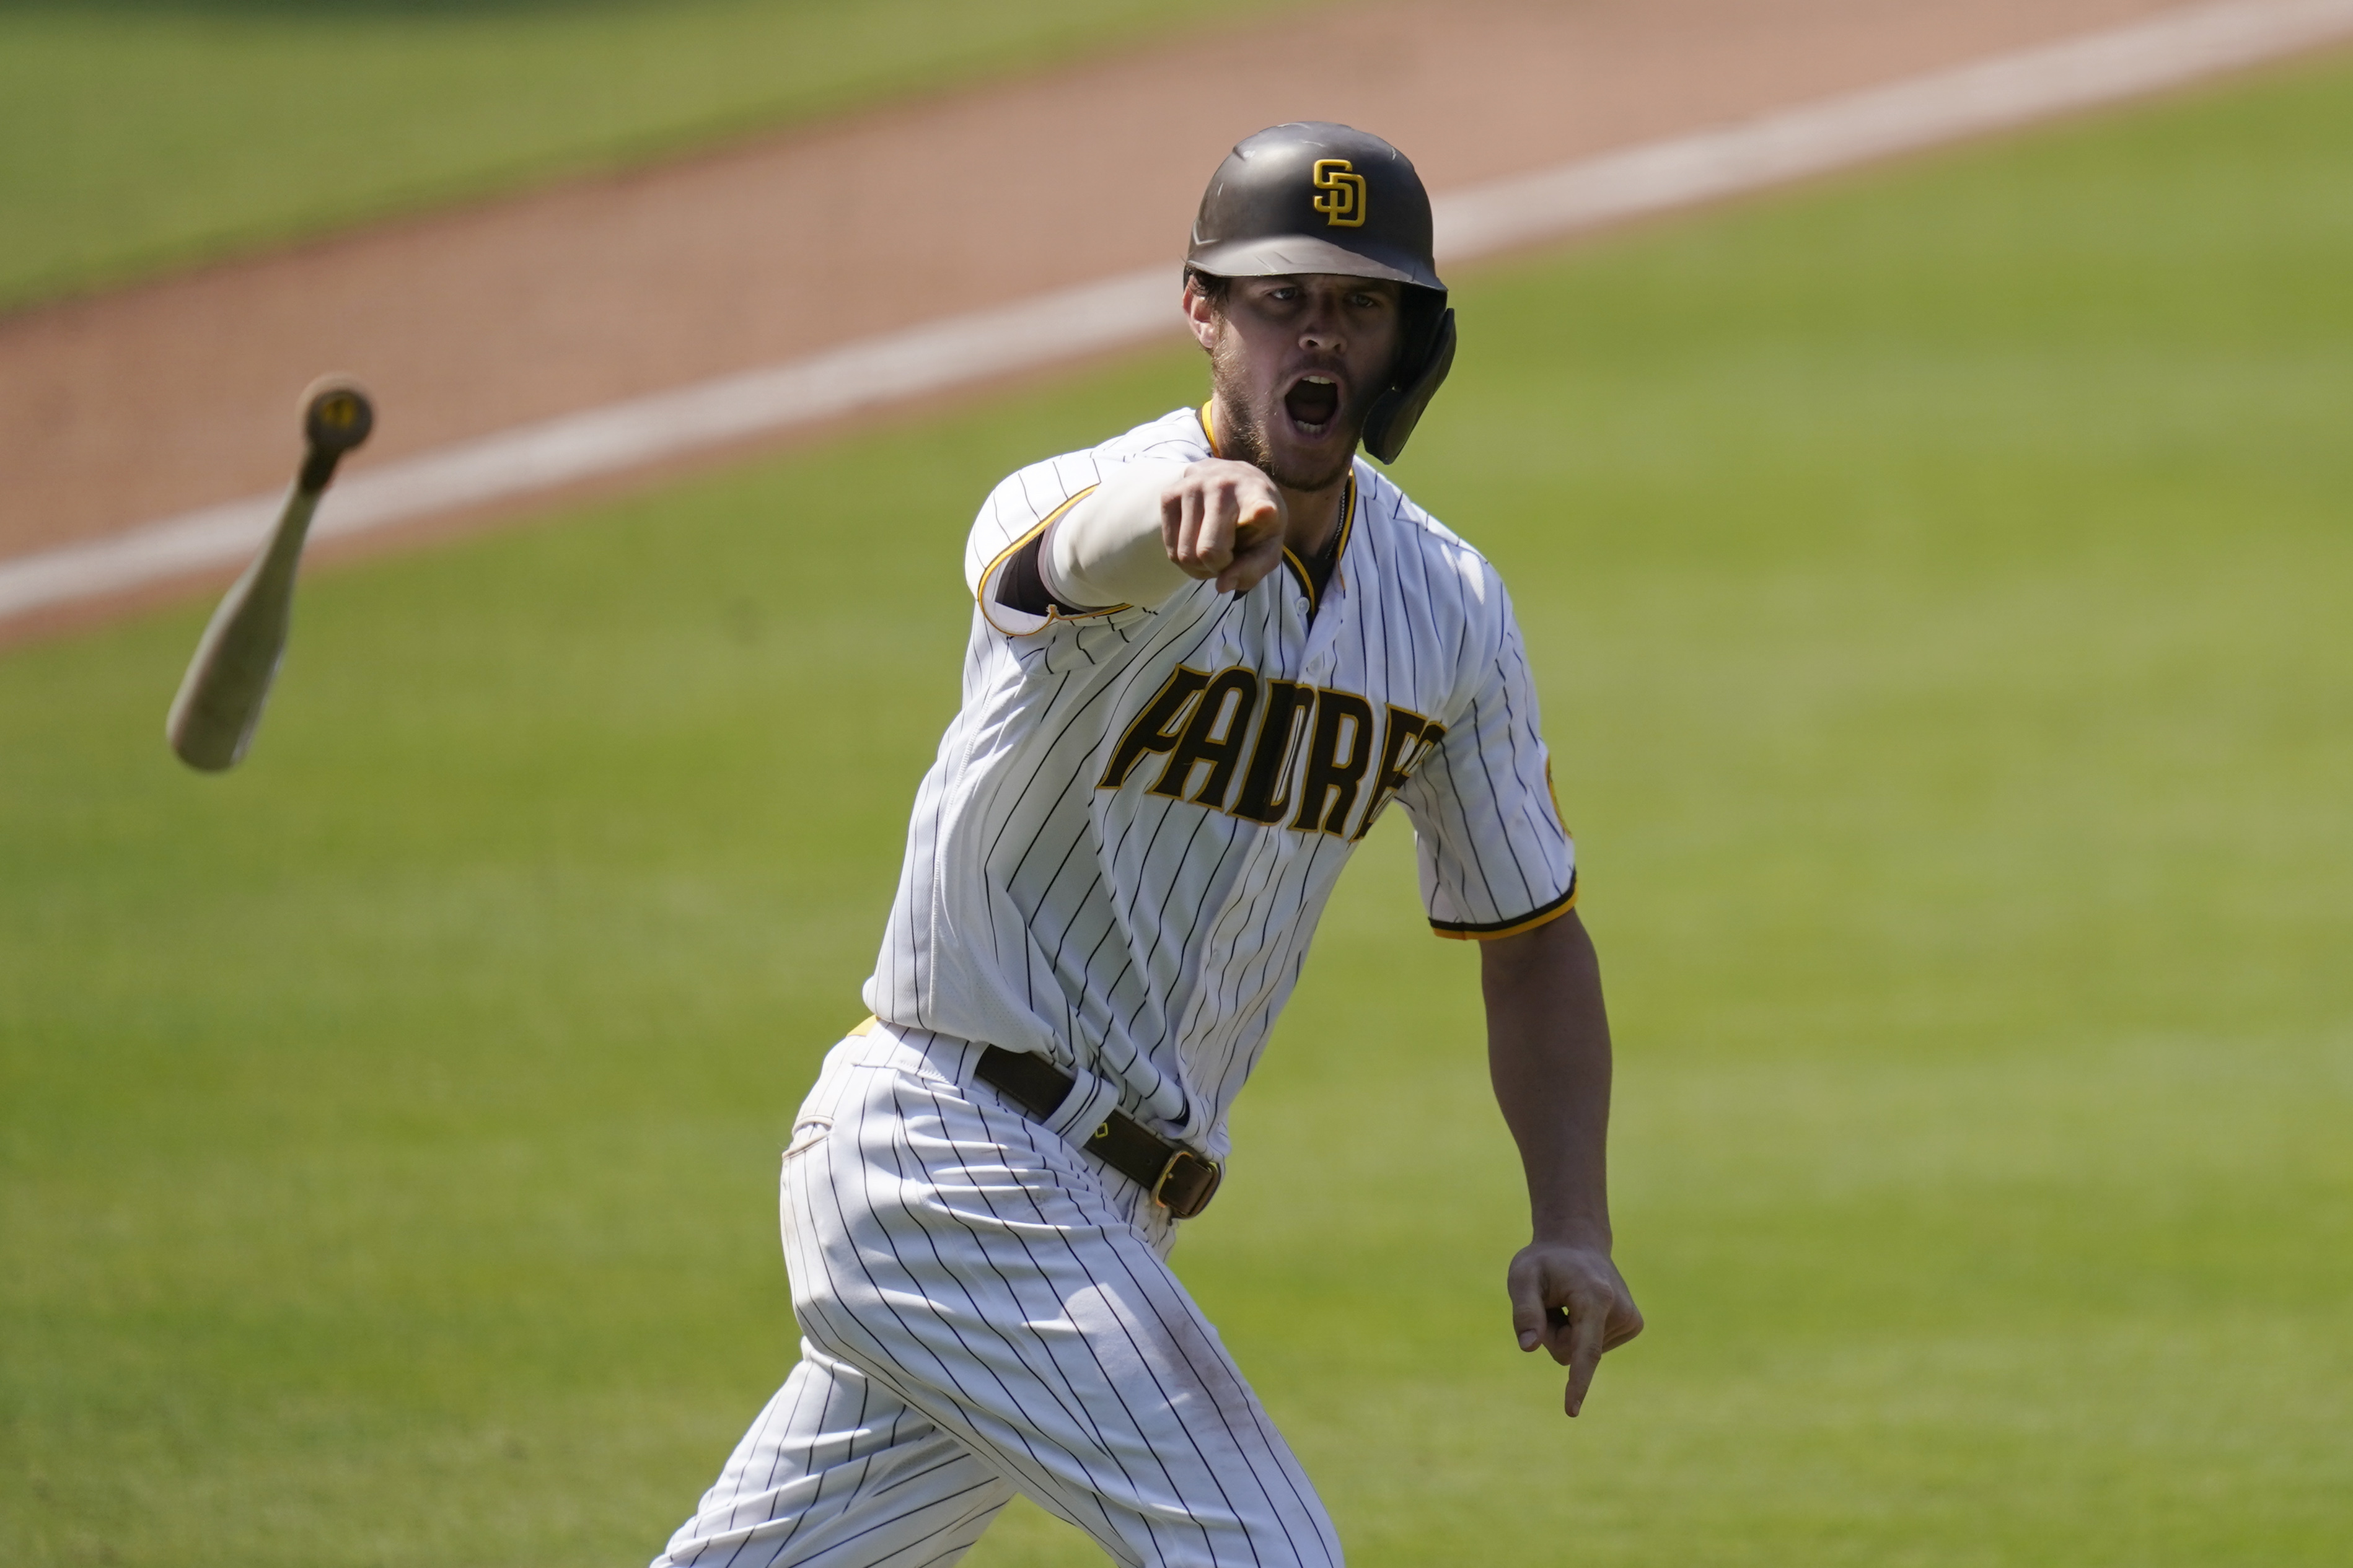 Adam Frazier's walk-off home run ends Pirates' losing streak